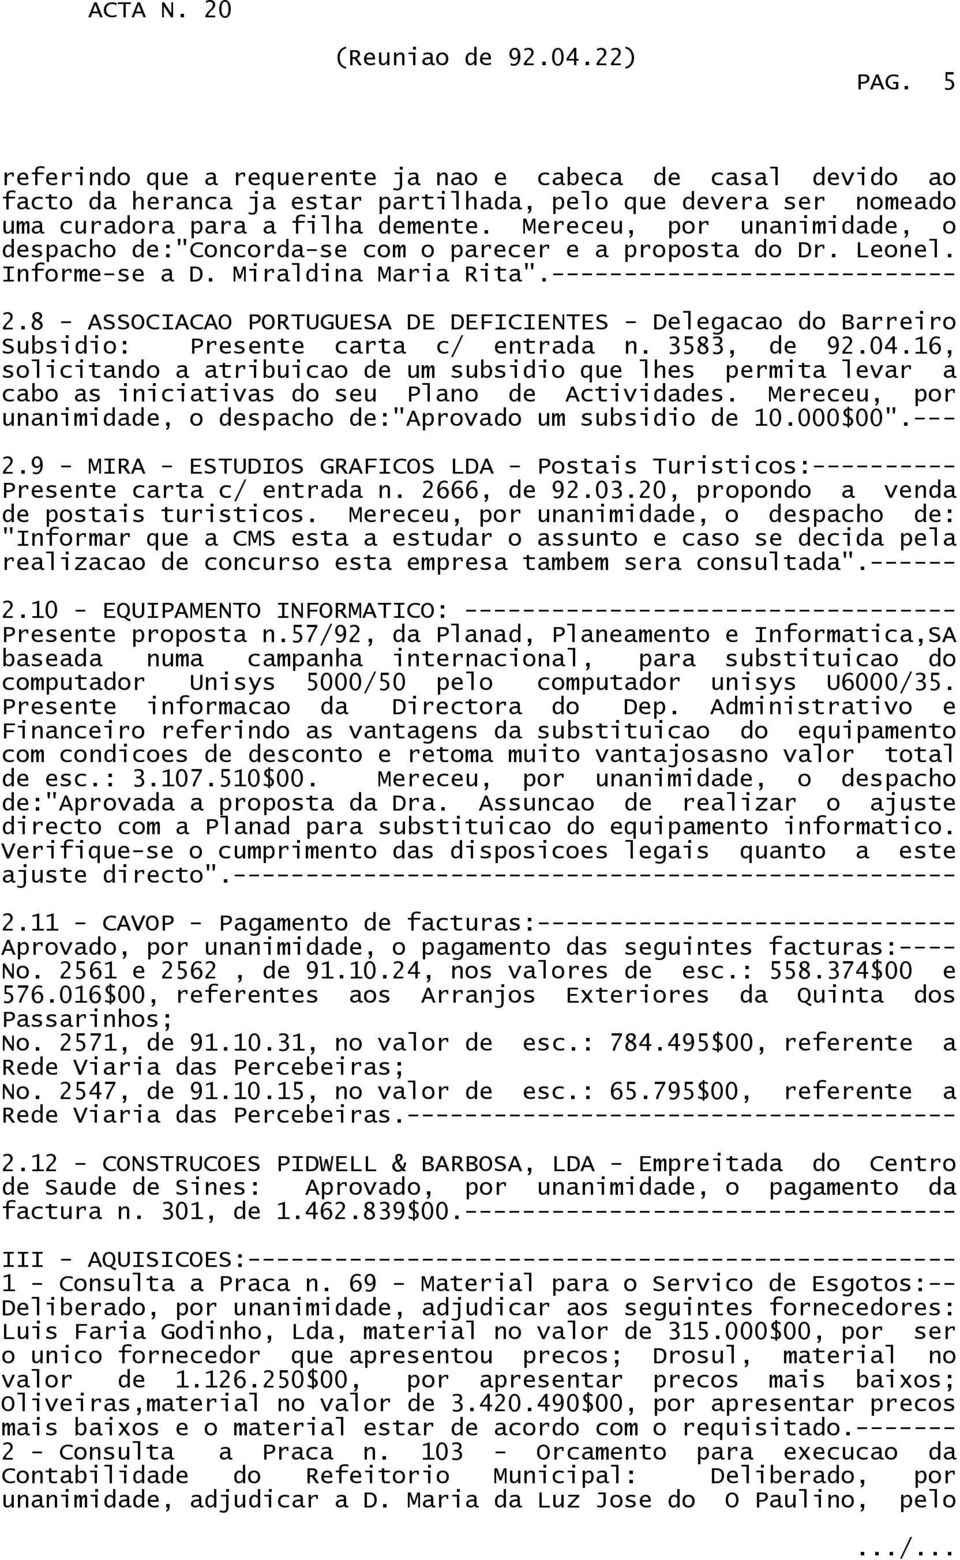 8 - ASSOCIACAO PORTUGUESA DE DEFICIENTES - Delegacao do Barreiro Subsidio: Presente carta c/ entrada n. 3583, de 92.04.